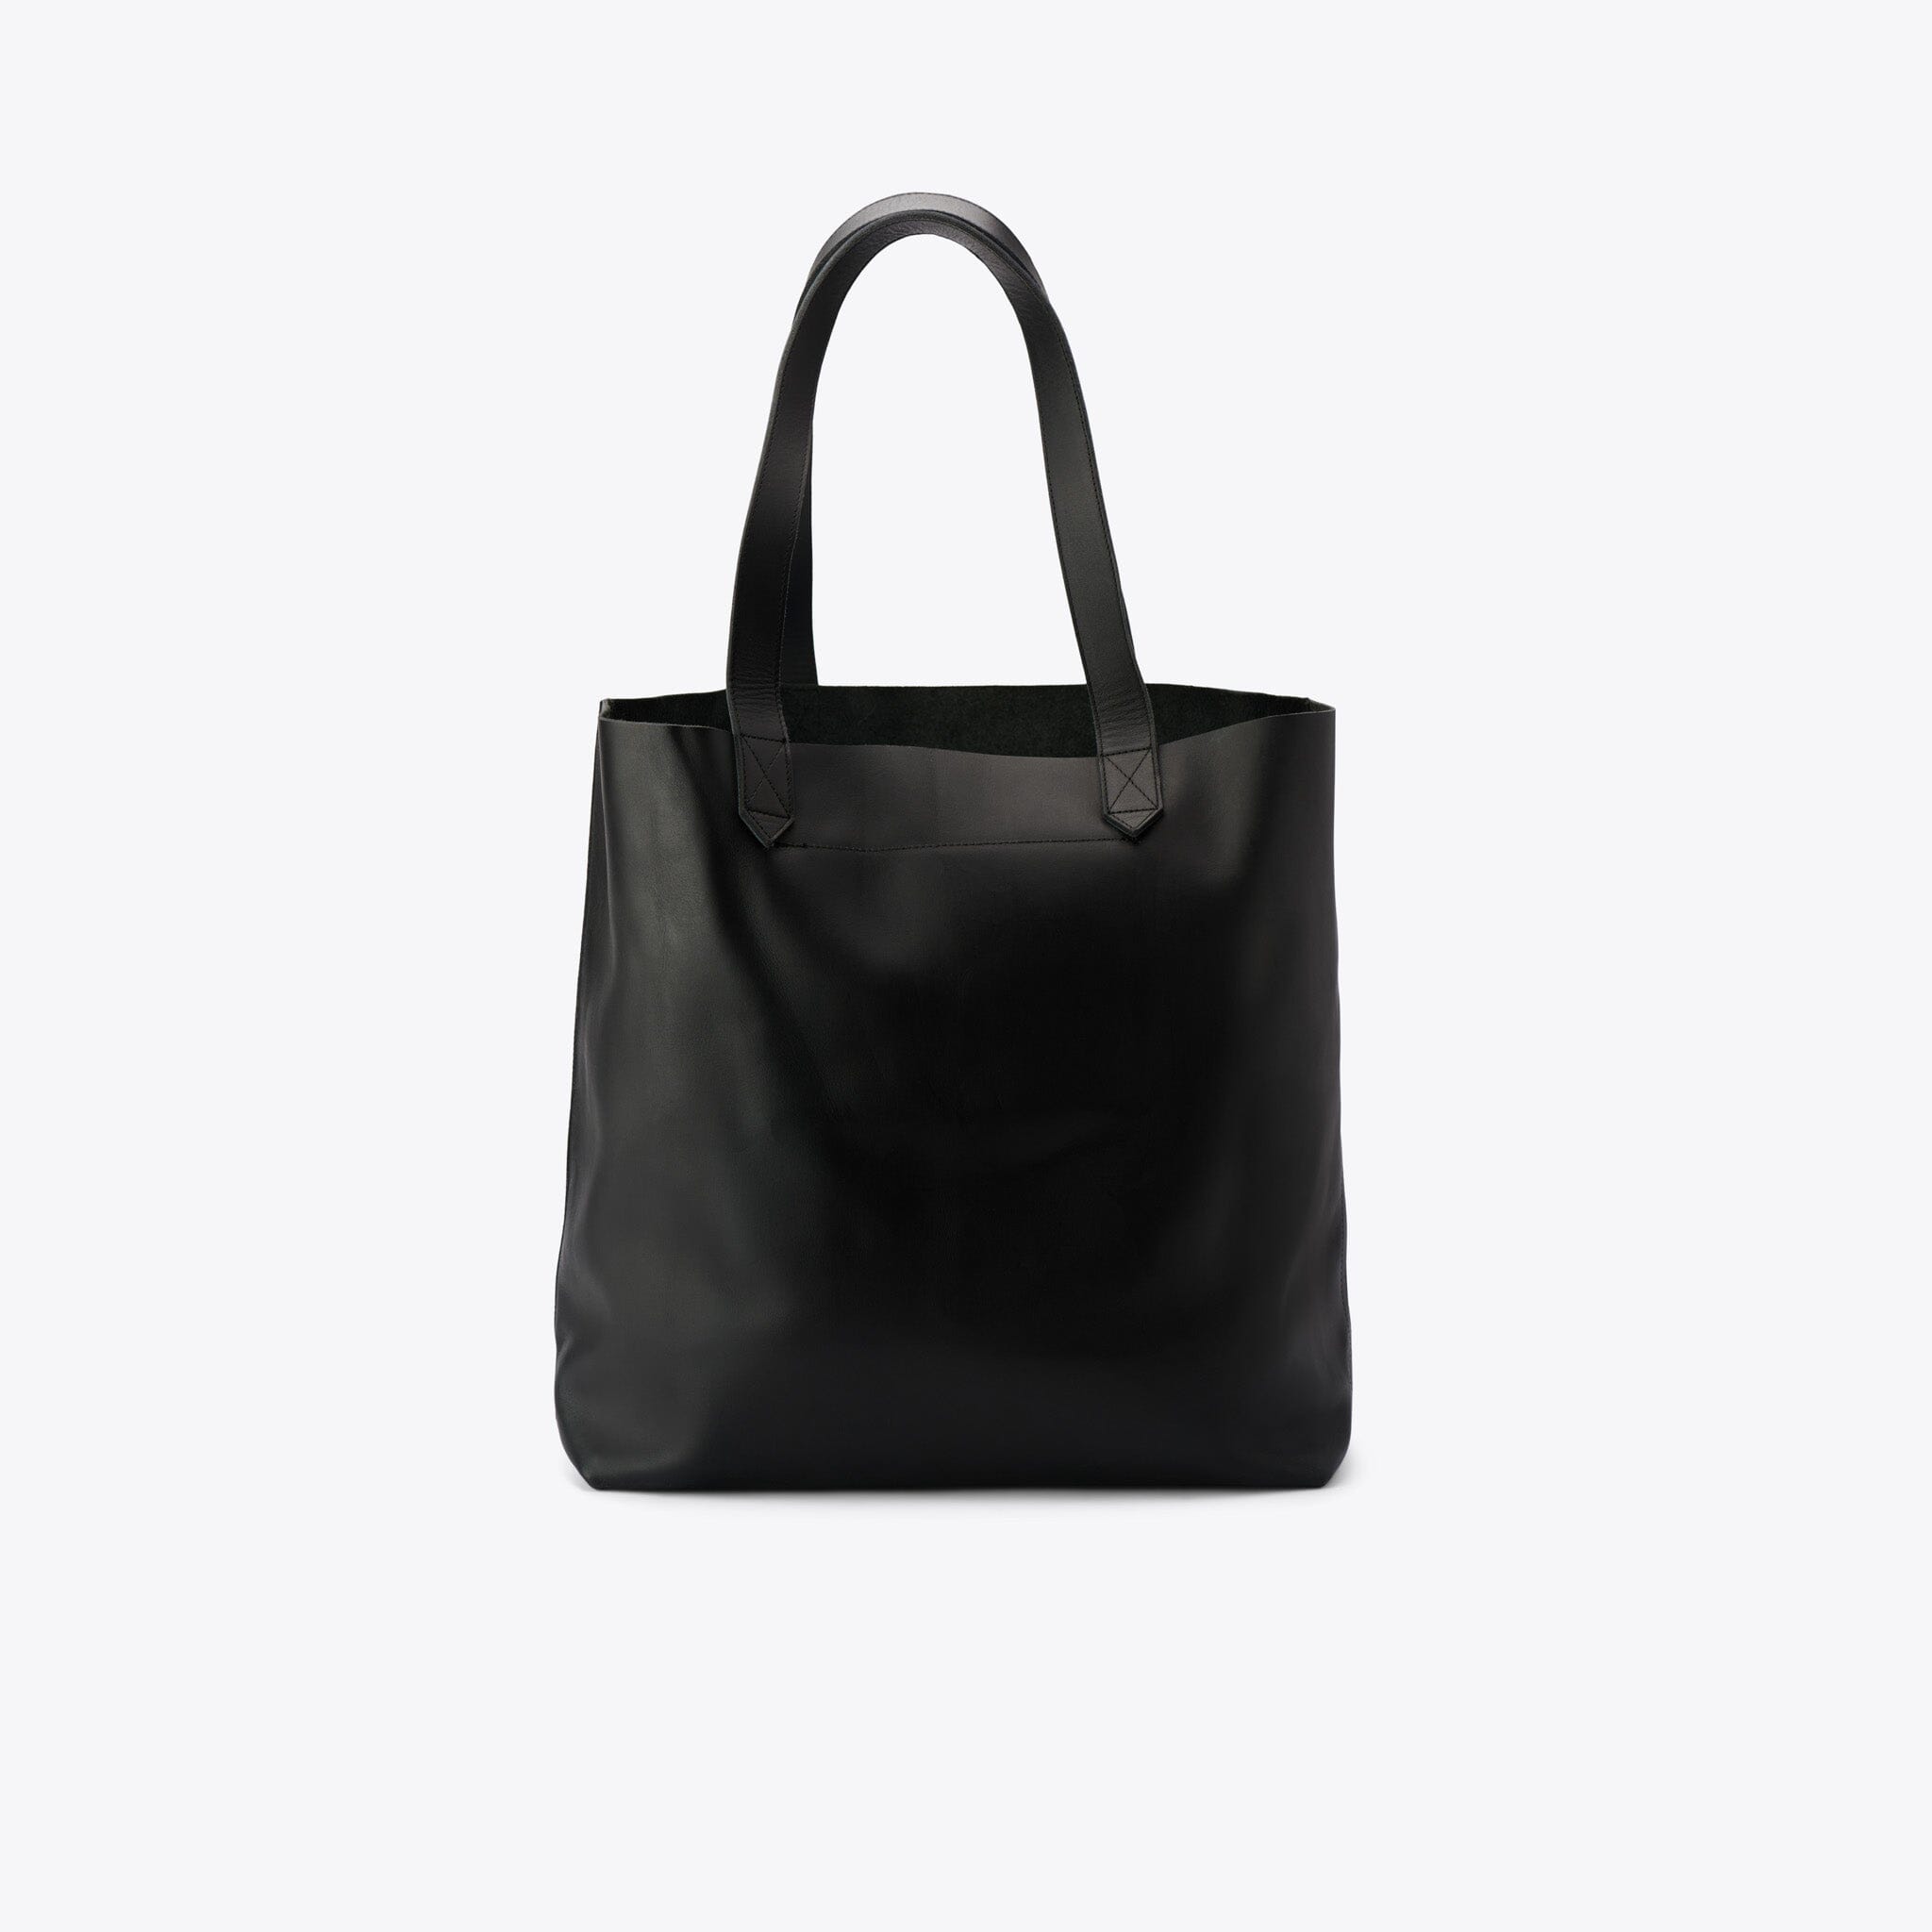 Lori Tote Black Leather Bag Nisolo 